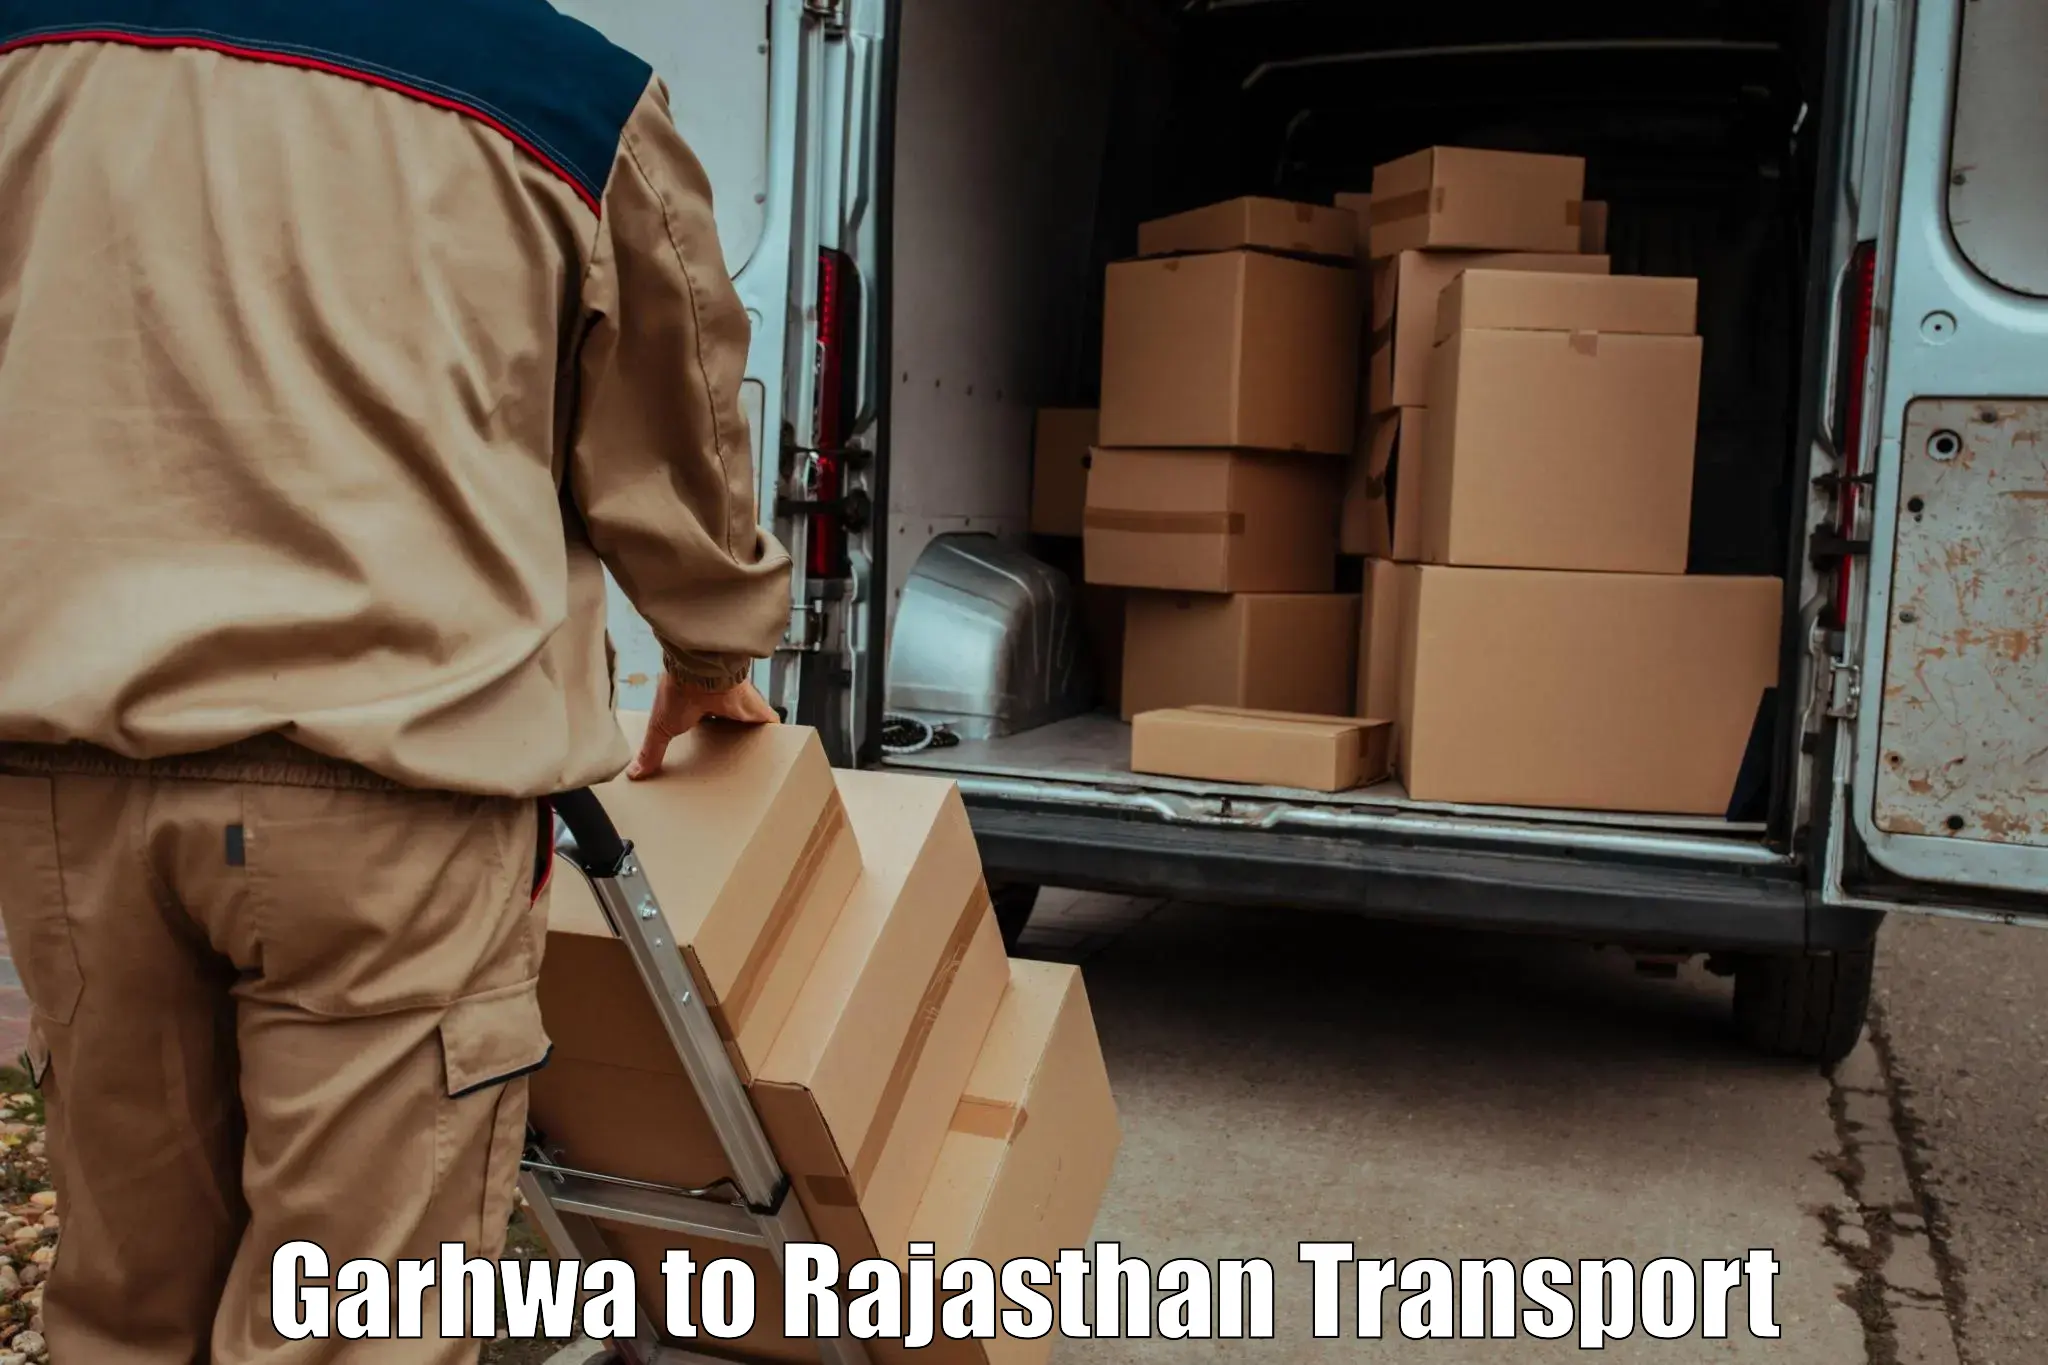 Parcel transport services Garhwa to Bhiwadi